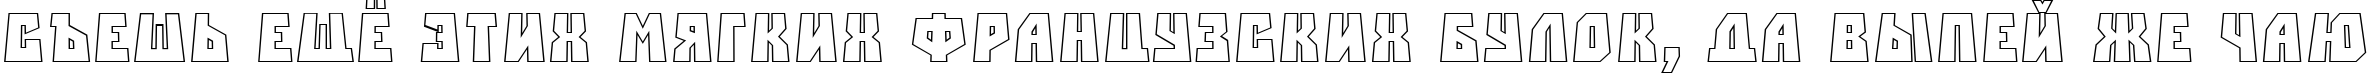 Пример написания шрифтом a_SimplerPrspOtl текста на русском